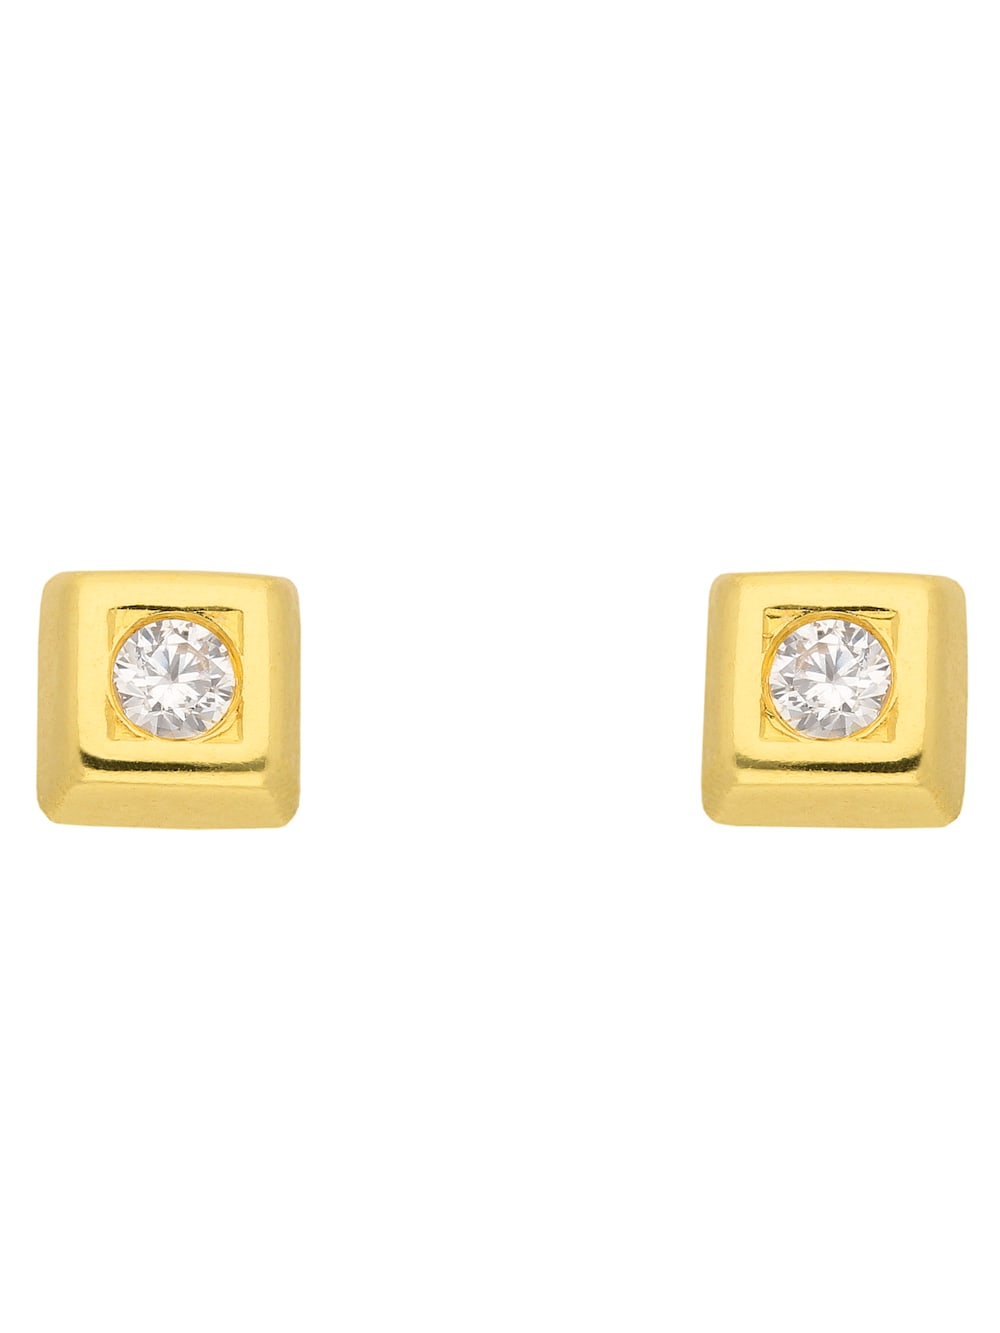 1001 Diamonds 333 Gold Ohrringe Ohrstecker mit Zirkonia | Diemer